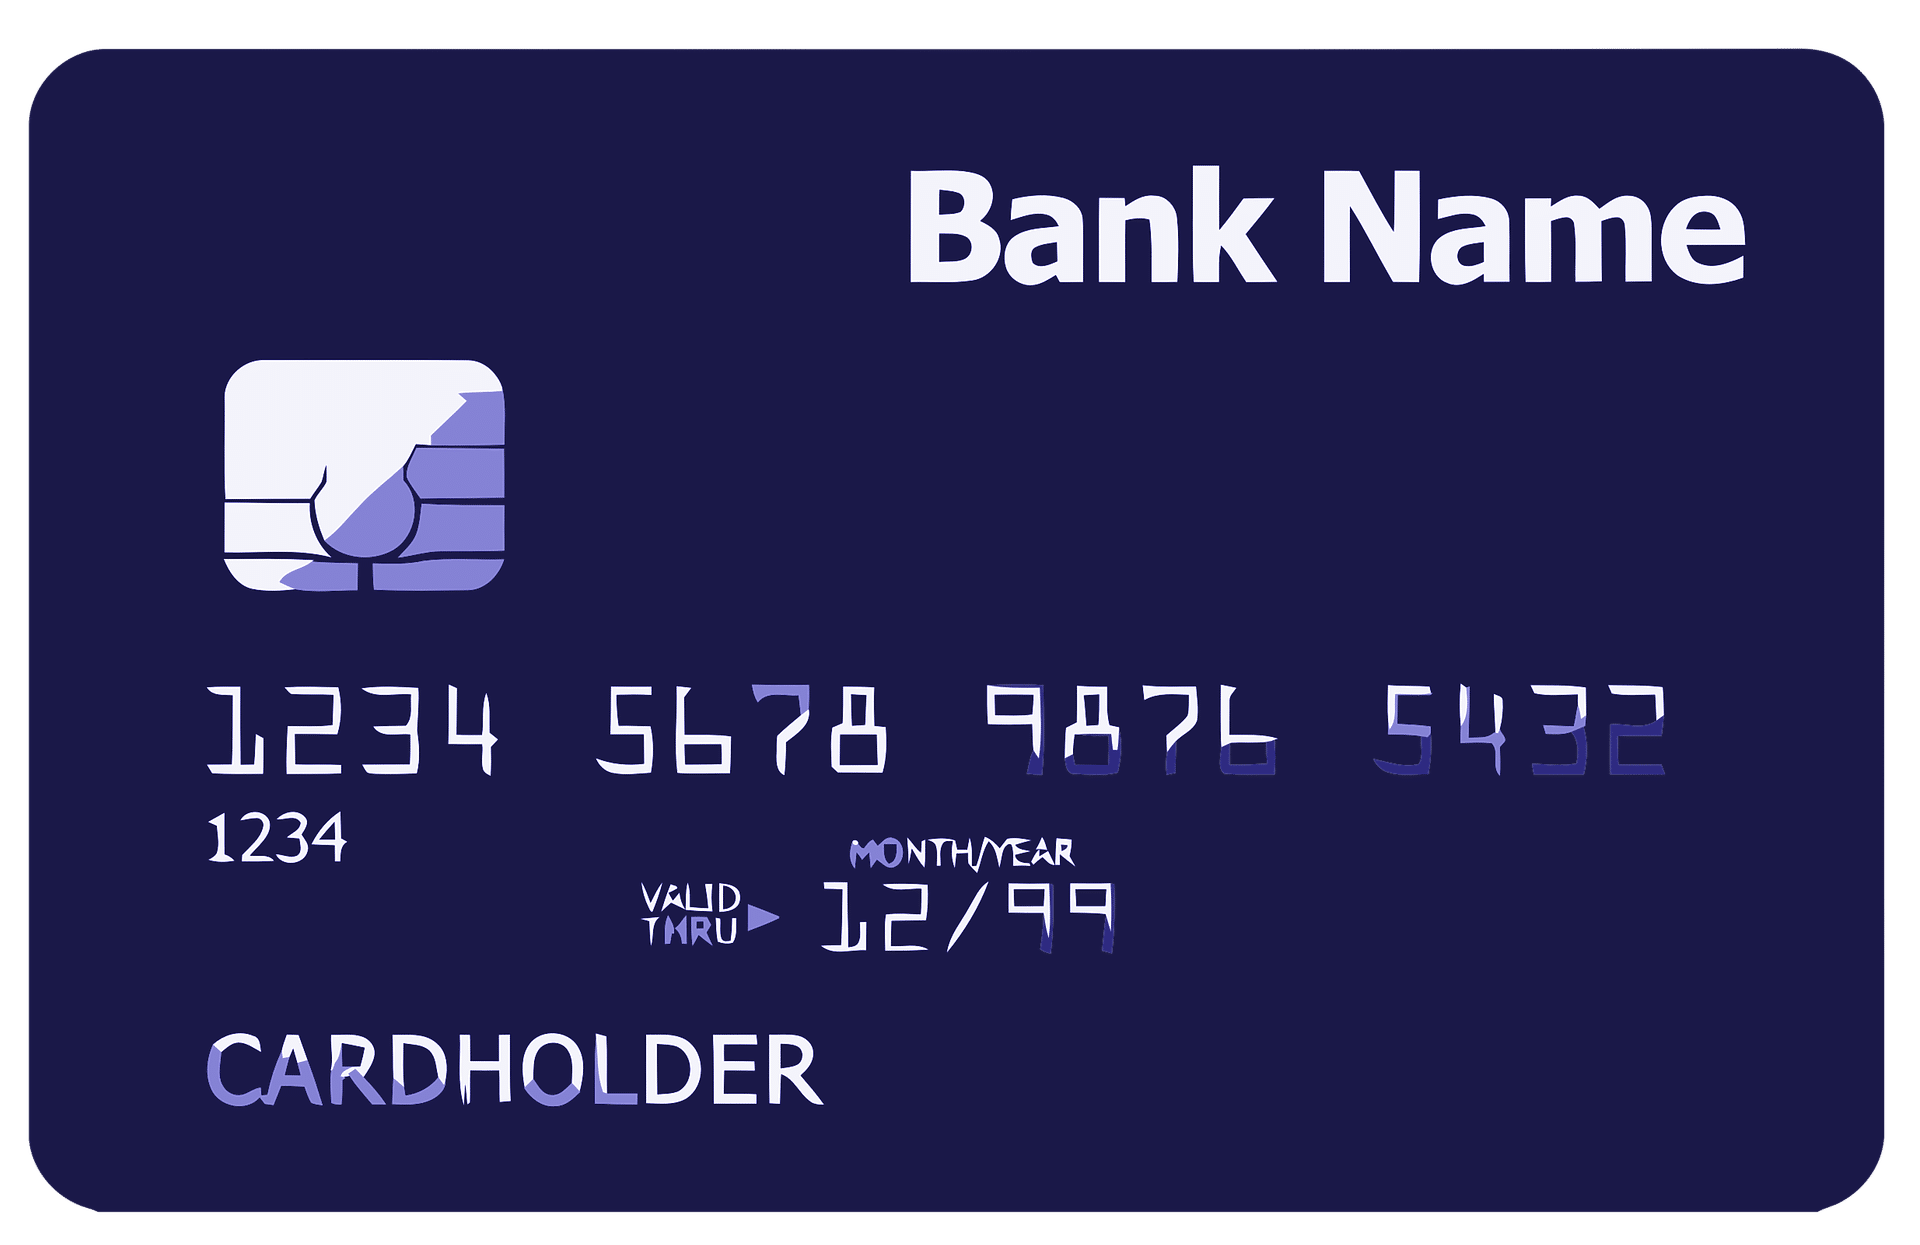 Kreditkort til hurtig erhvervskonto